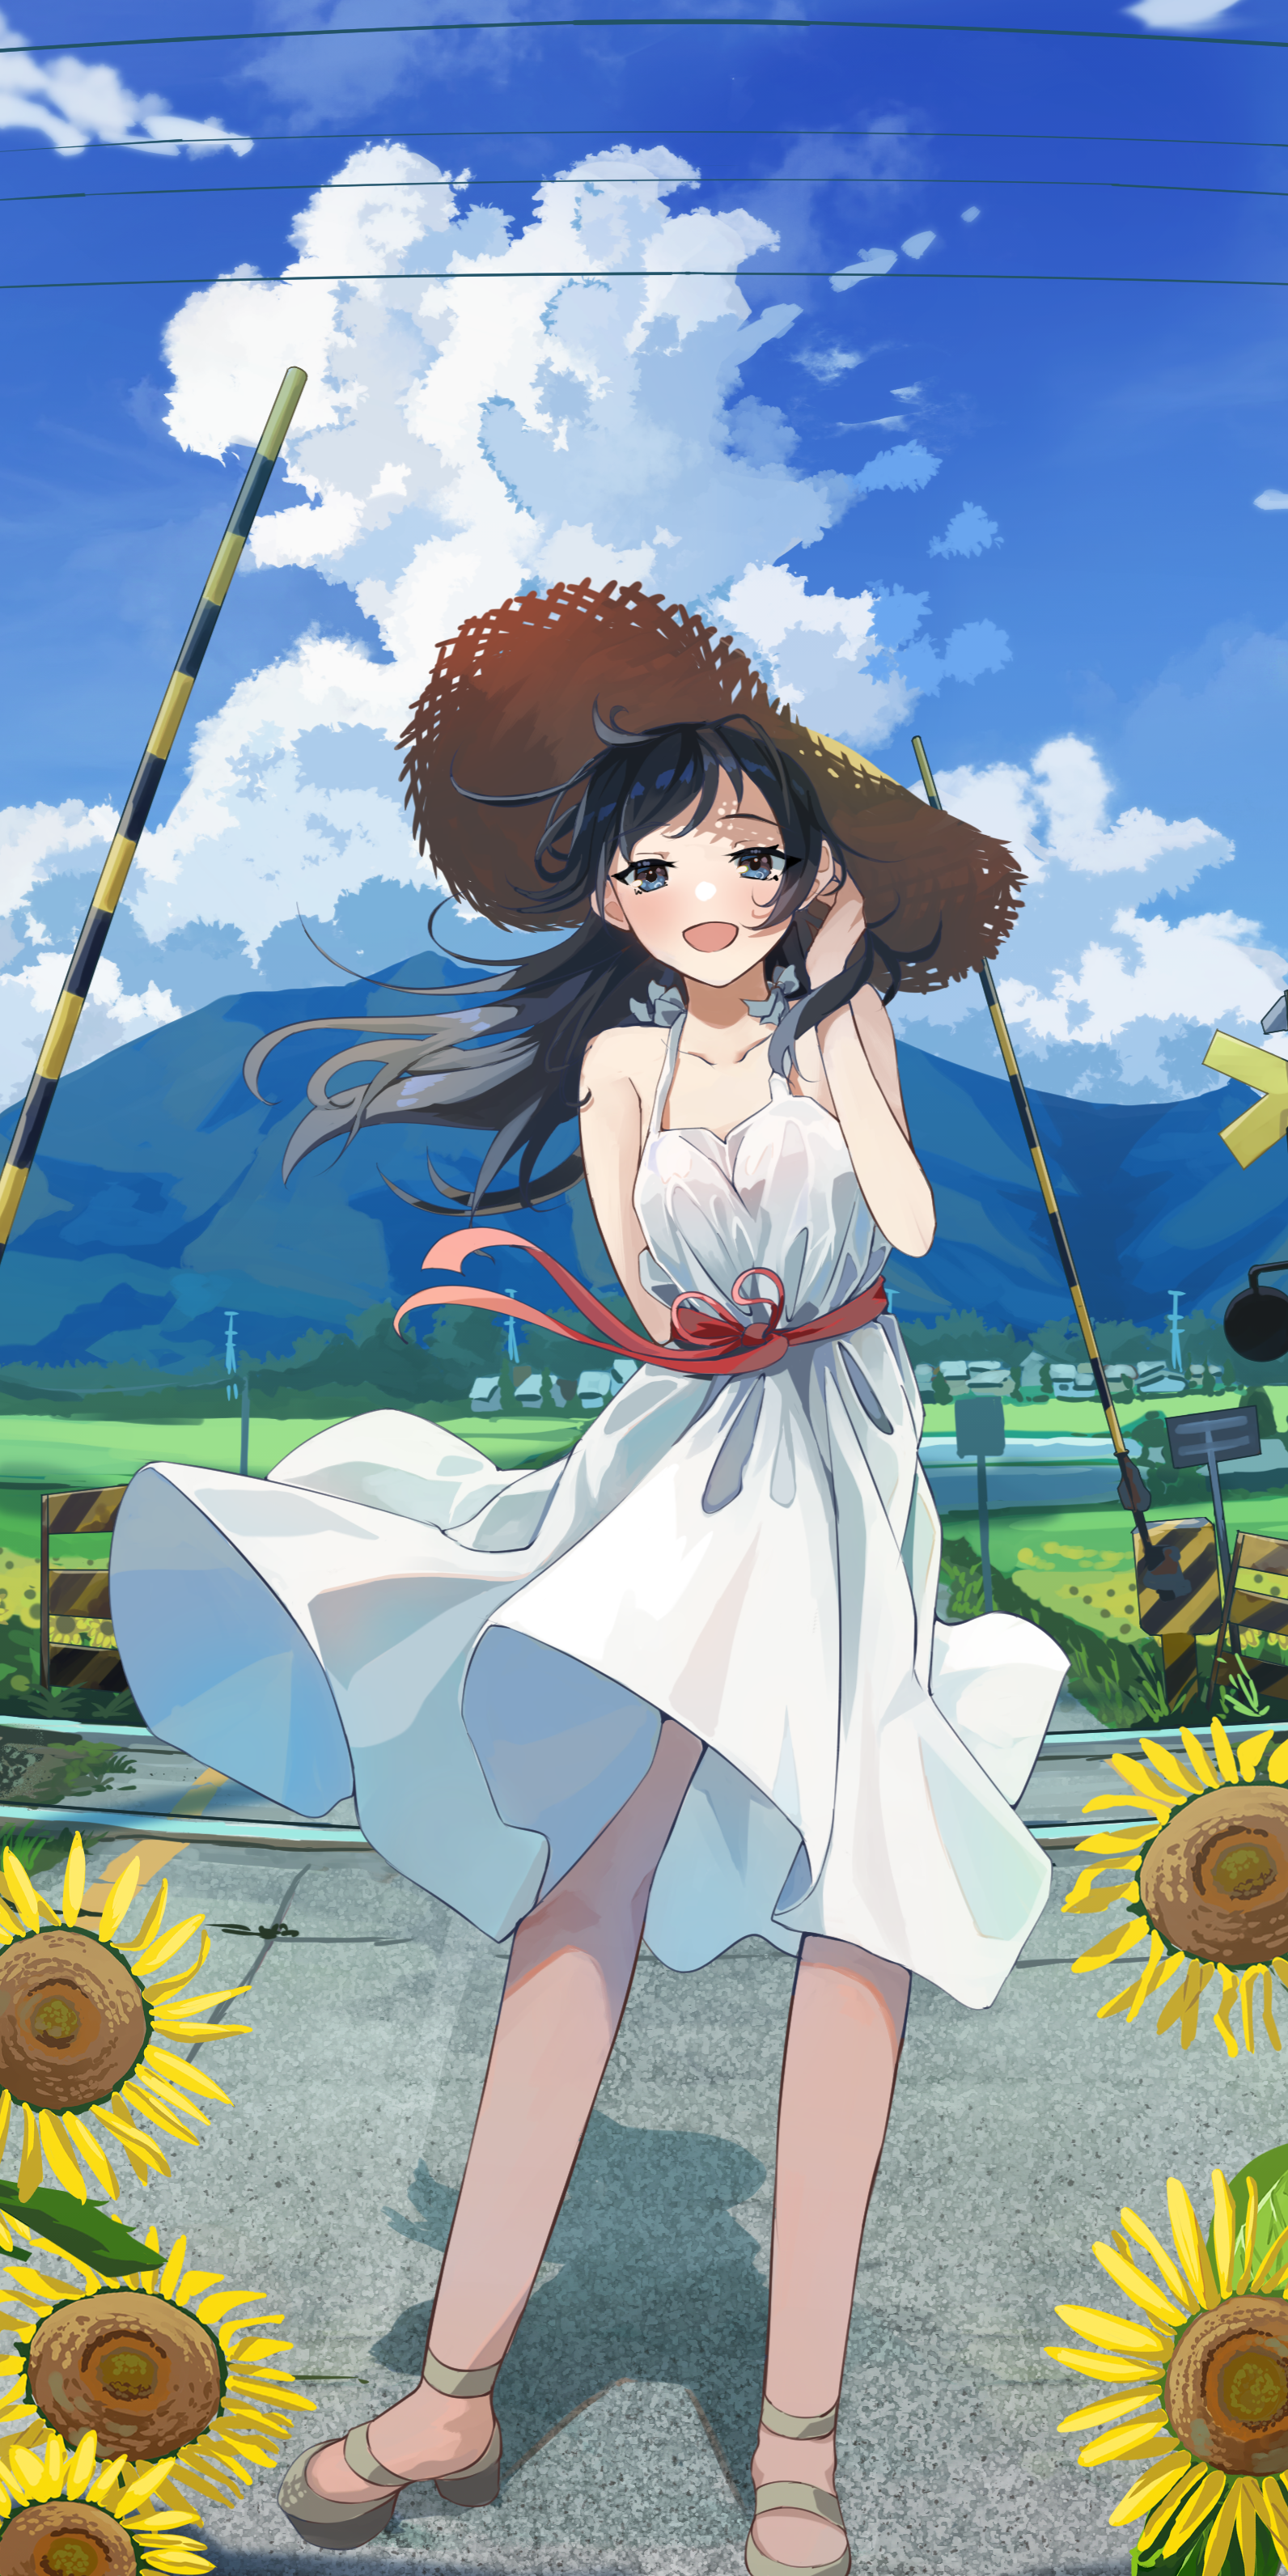 Anime Anime Girls Original Characters Solo Artwork Digital Art Fan Art Straw Hat Hat Dandelion 1592x3184